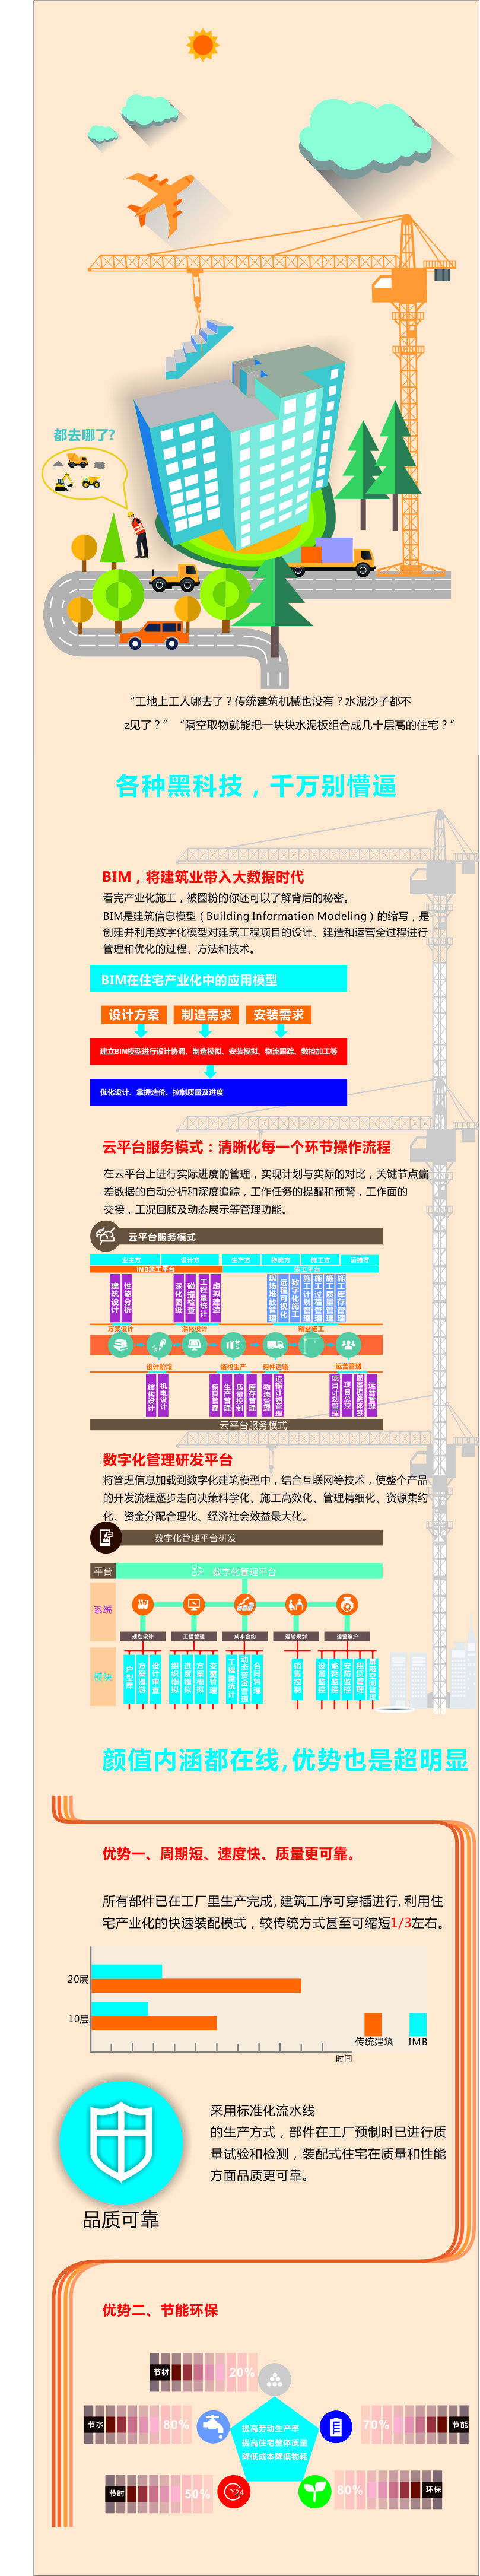 北京住总万科建筑工业化科技股份有限公司 移动端信息图图0